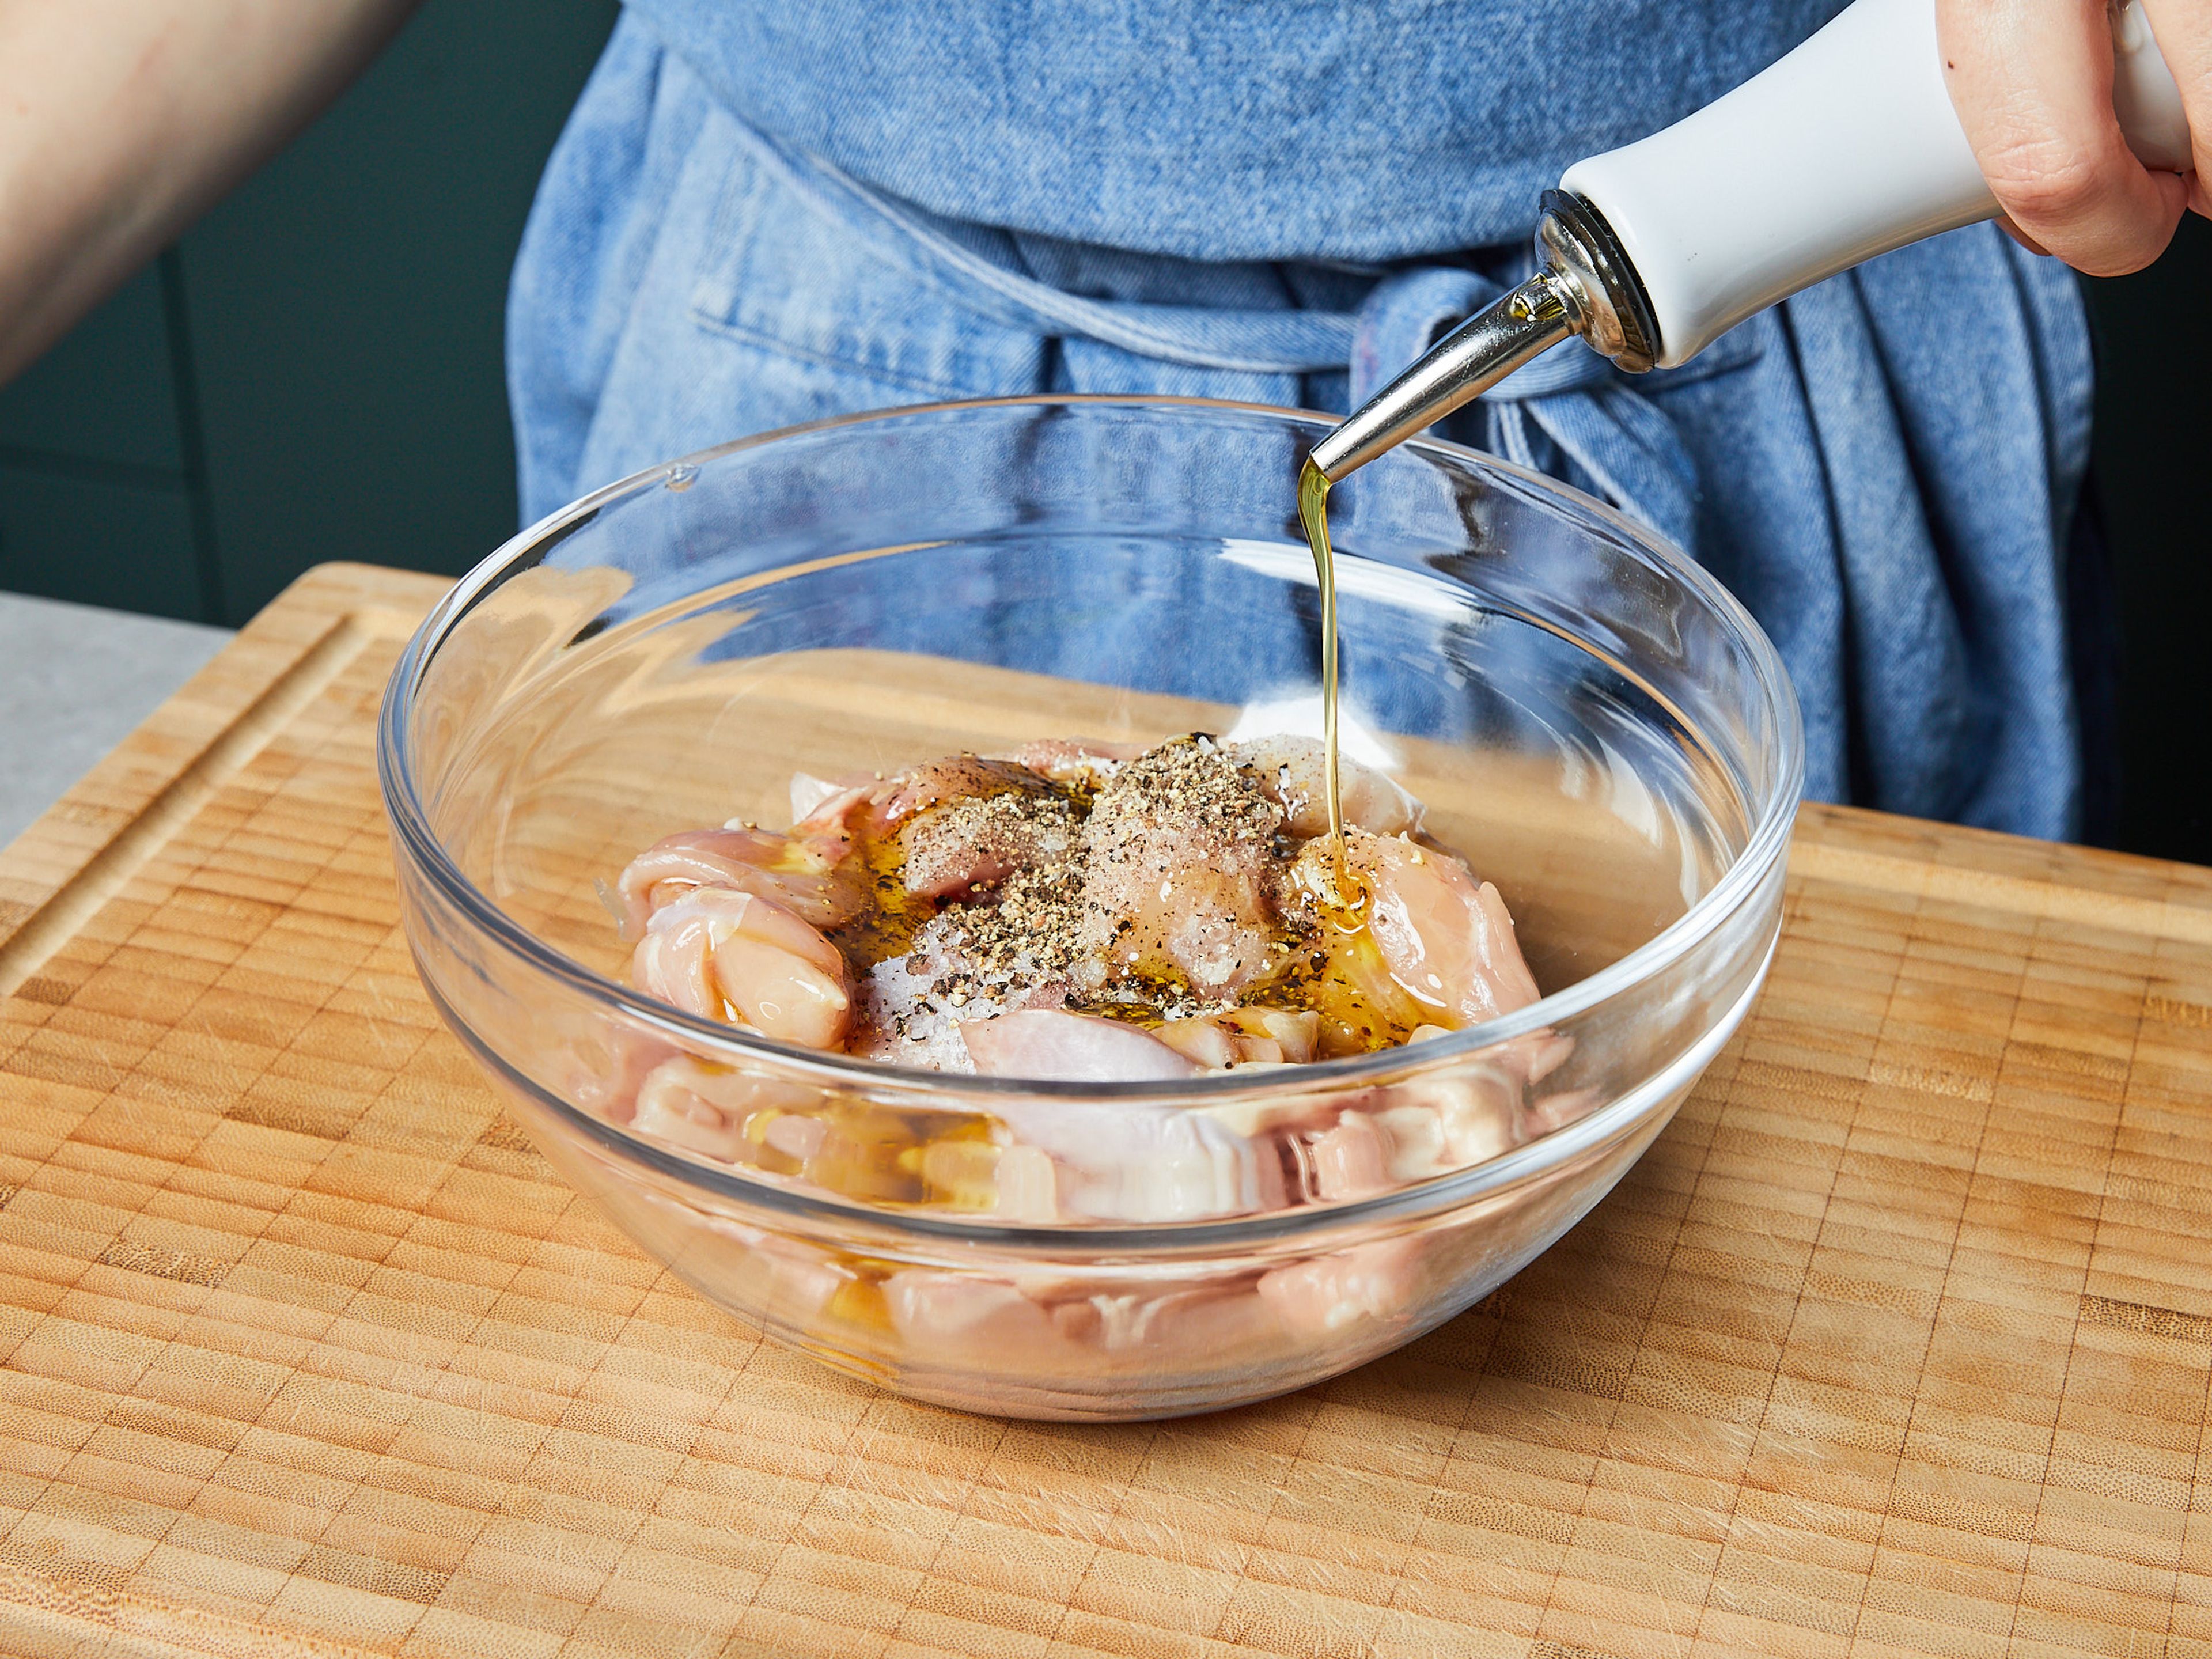 Das Hähnchenfleisch in grobe Stücke schneiden. In einer großen Schüssel mit Salz, Pfeffer und der Hälfte des Öls einreiben und ca. 5 Min. beiseitestellen und marinieren lassen. In der Zwischenzeit die Paprika entkernen. Paprika und Zwiebel fein würfeln. Knoblauch reiben. Petersilie fein hacken und zum Garnieren beiseitestellen.